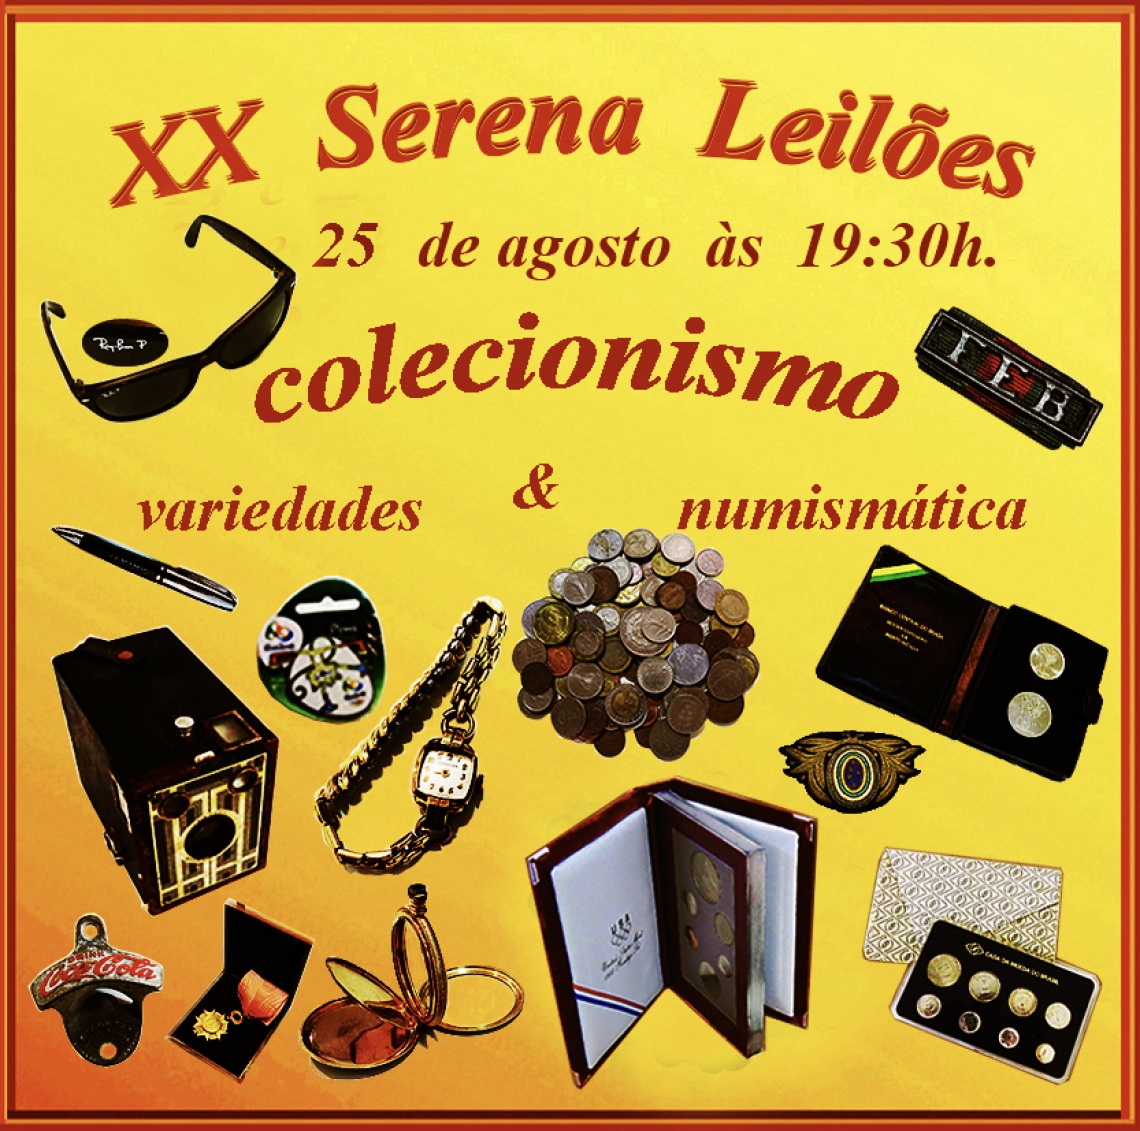 Serena Leilões XX - Colecionismo, Numismática e Variedades